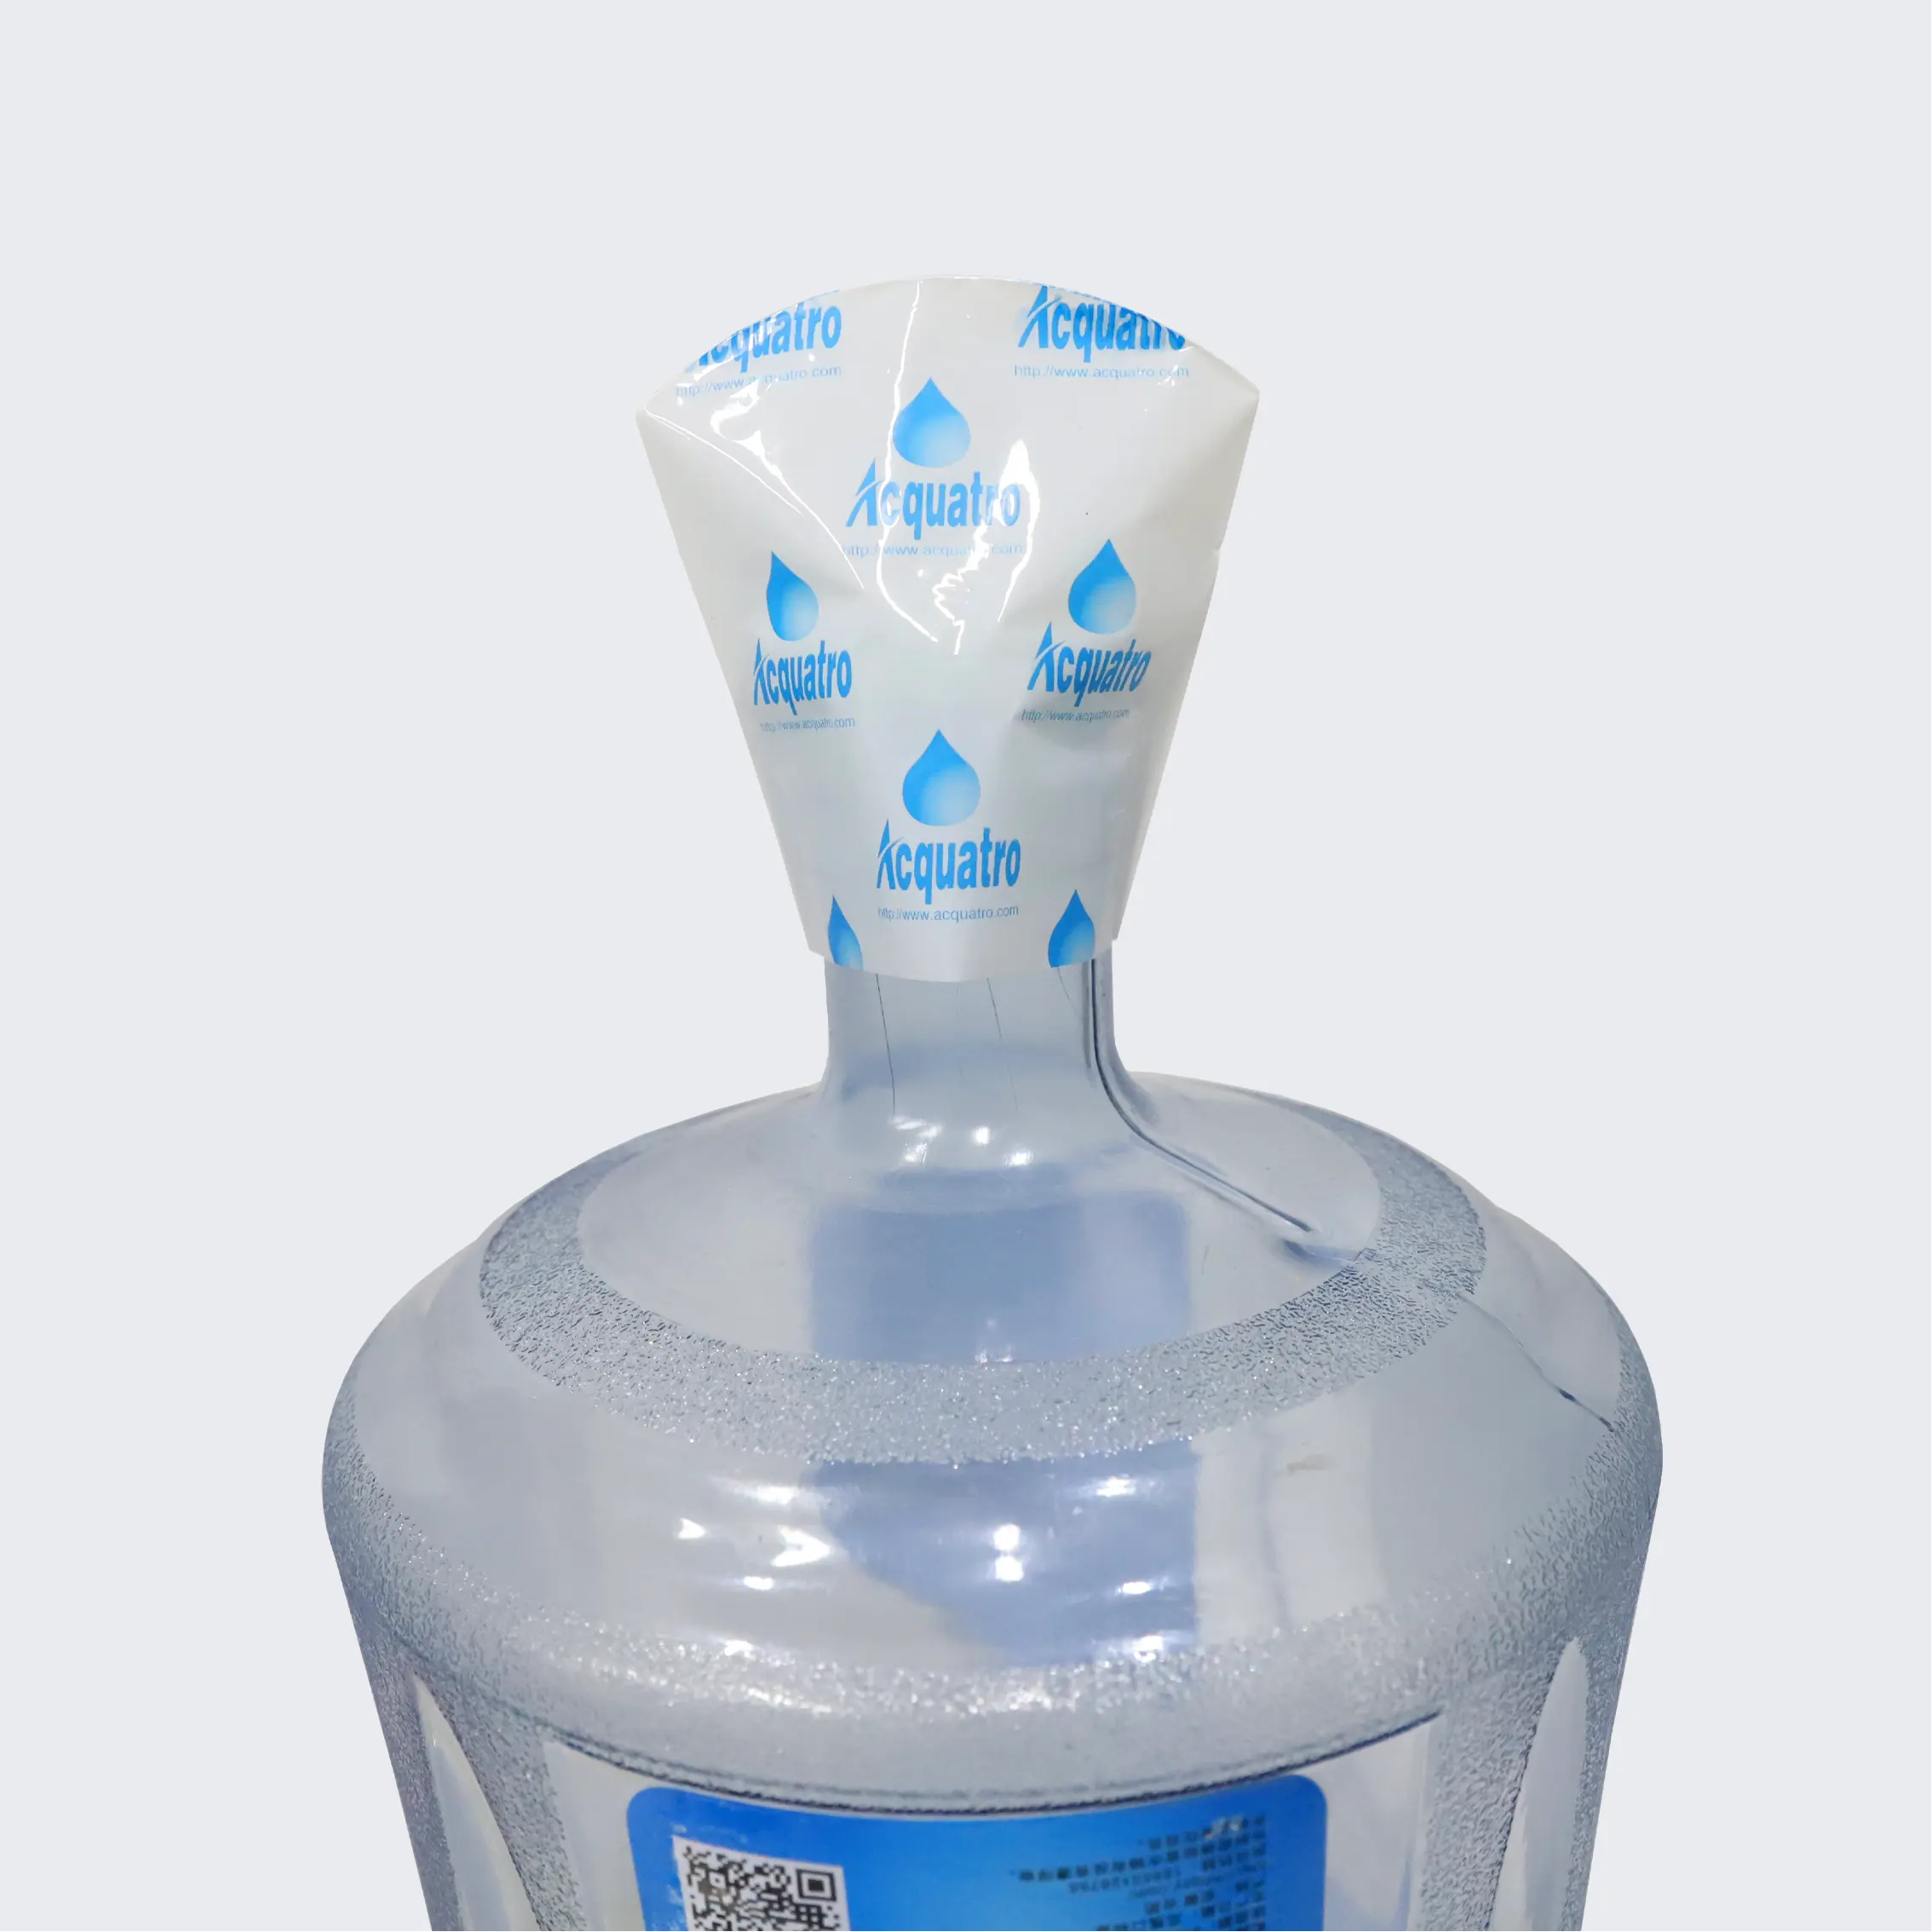 اغلفة الاستنكماش اغلفة الاستنكماش عينات مجانية من البلاستيك الاستنكماش لل 5 جالون اغلفة مظلة زجاجة المياه PVC طباعة جافوره